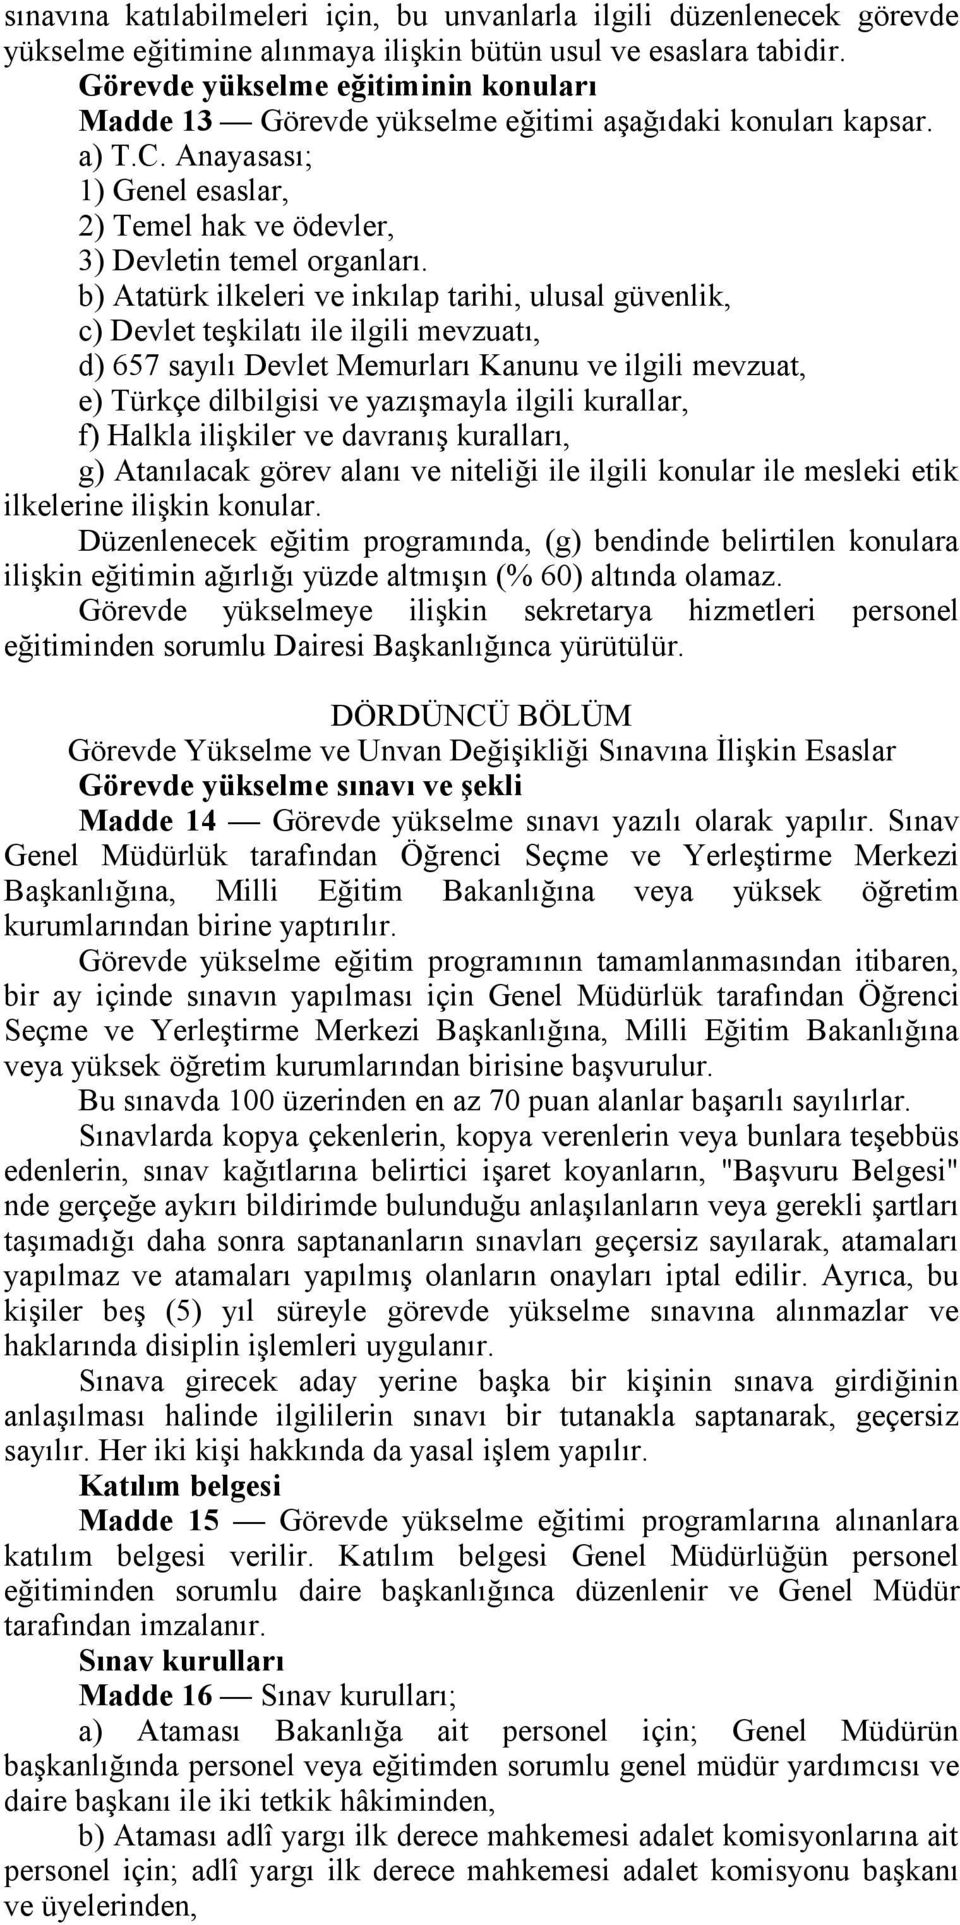 b) Atatürk ilkeleri ve inkılap tarihi, ulusal güvenlik, c) Devlet teşkilatı ile ilgili mevzuatı, d) 657 sayılı Devlet Memurları Kanunu ve ilgili mevzuat, e) Türkçe dilbilgisi ve yazışmayla ilgili